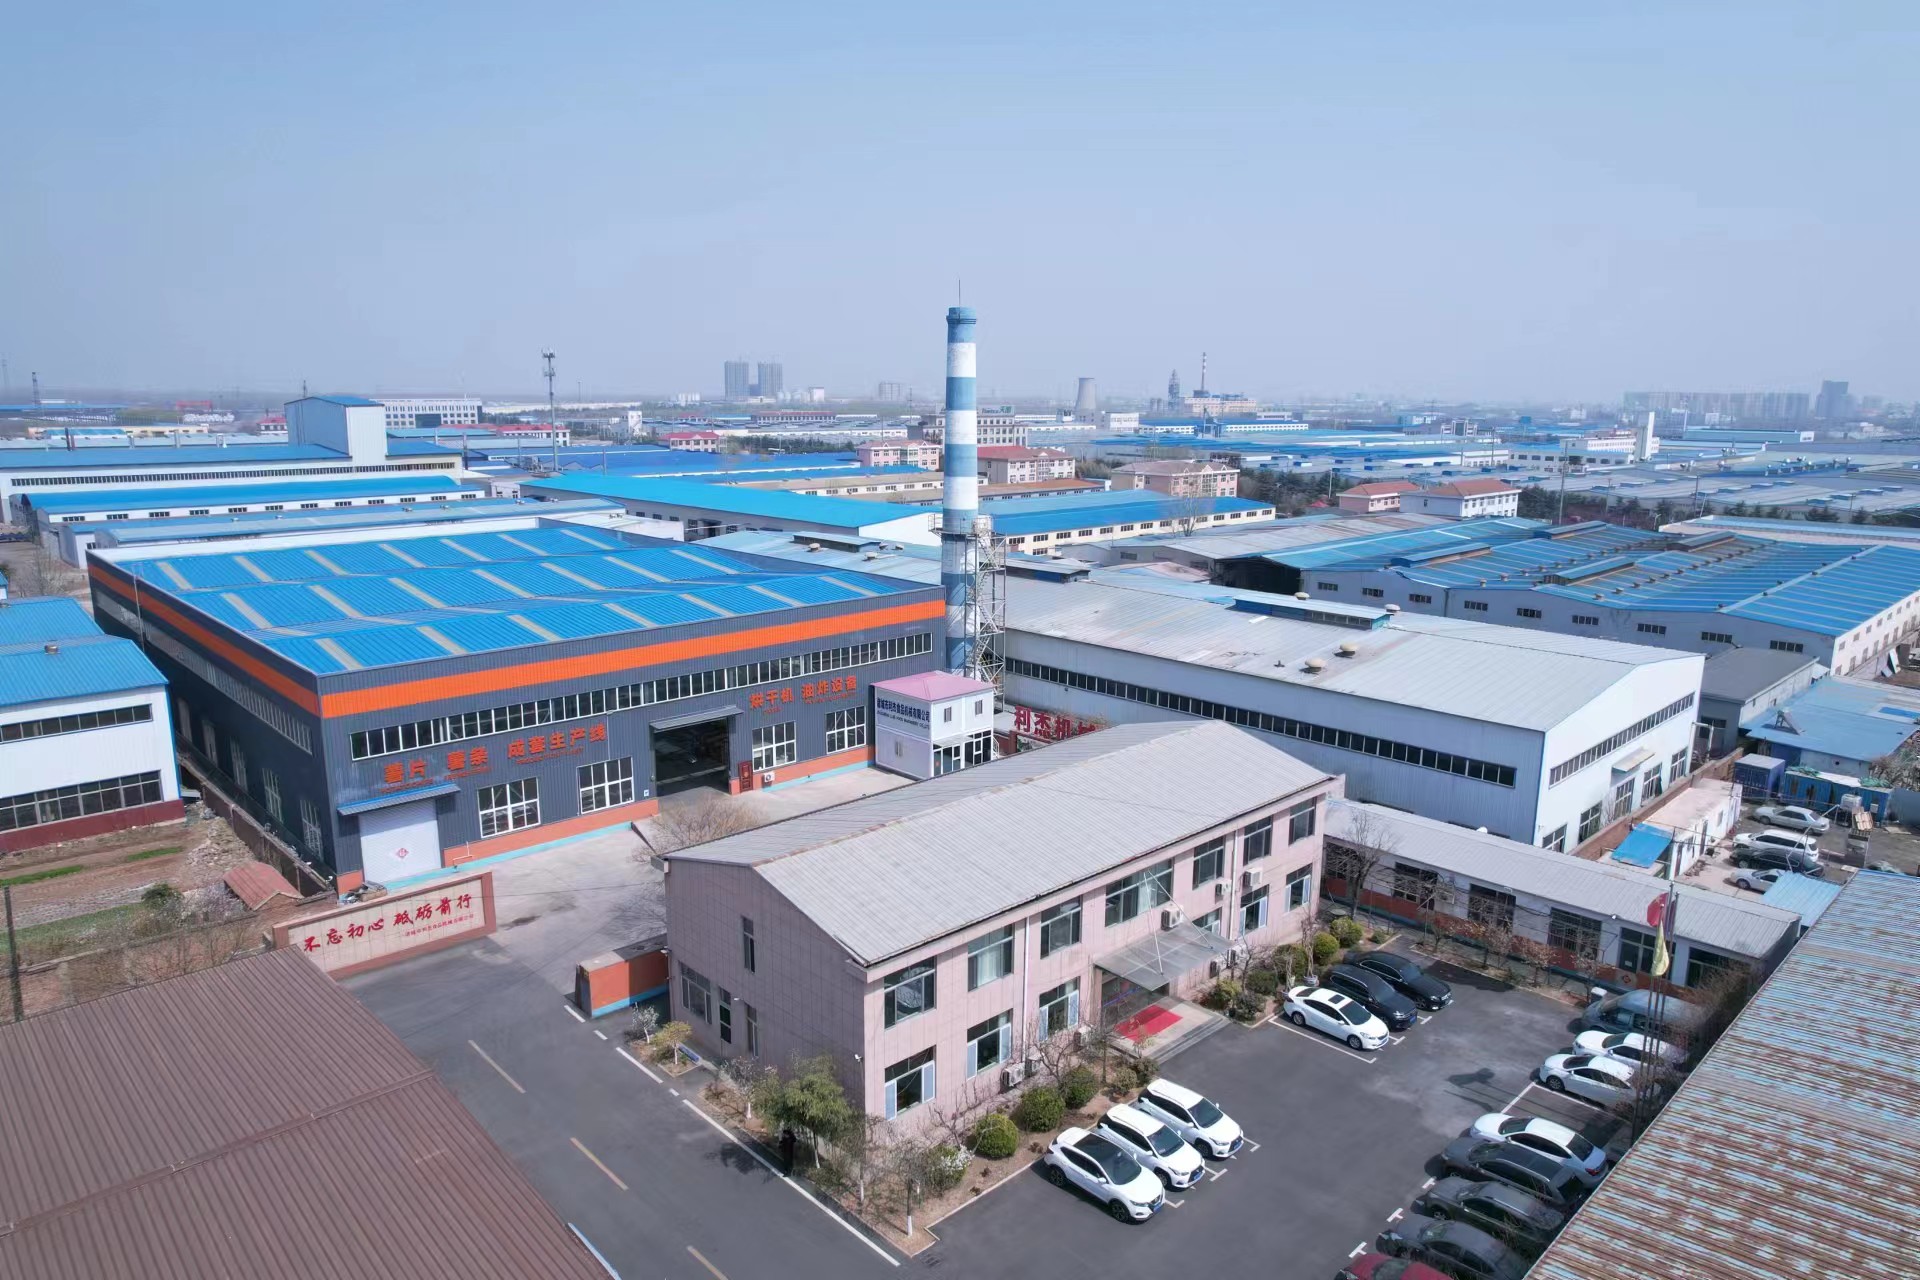 Zhucheng Lijie Food Machinery Co., Ltd.